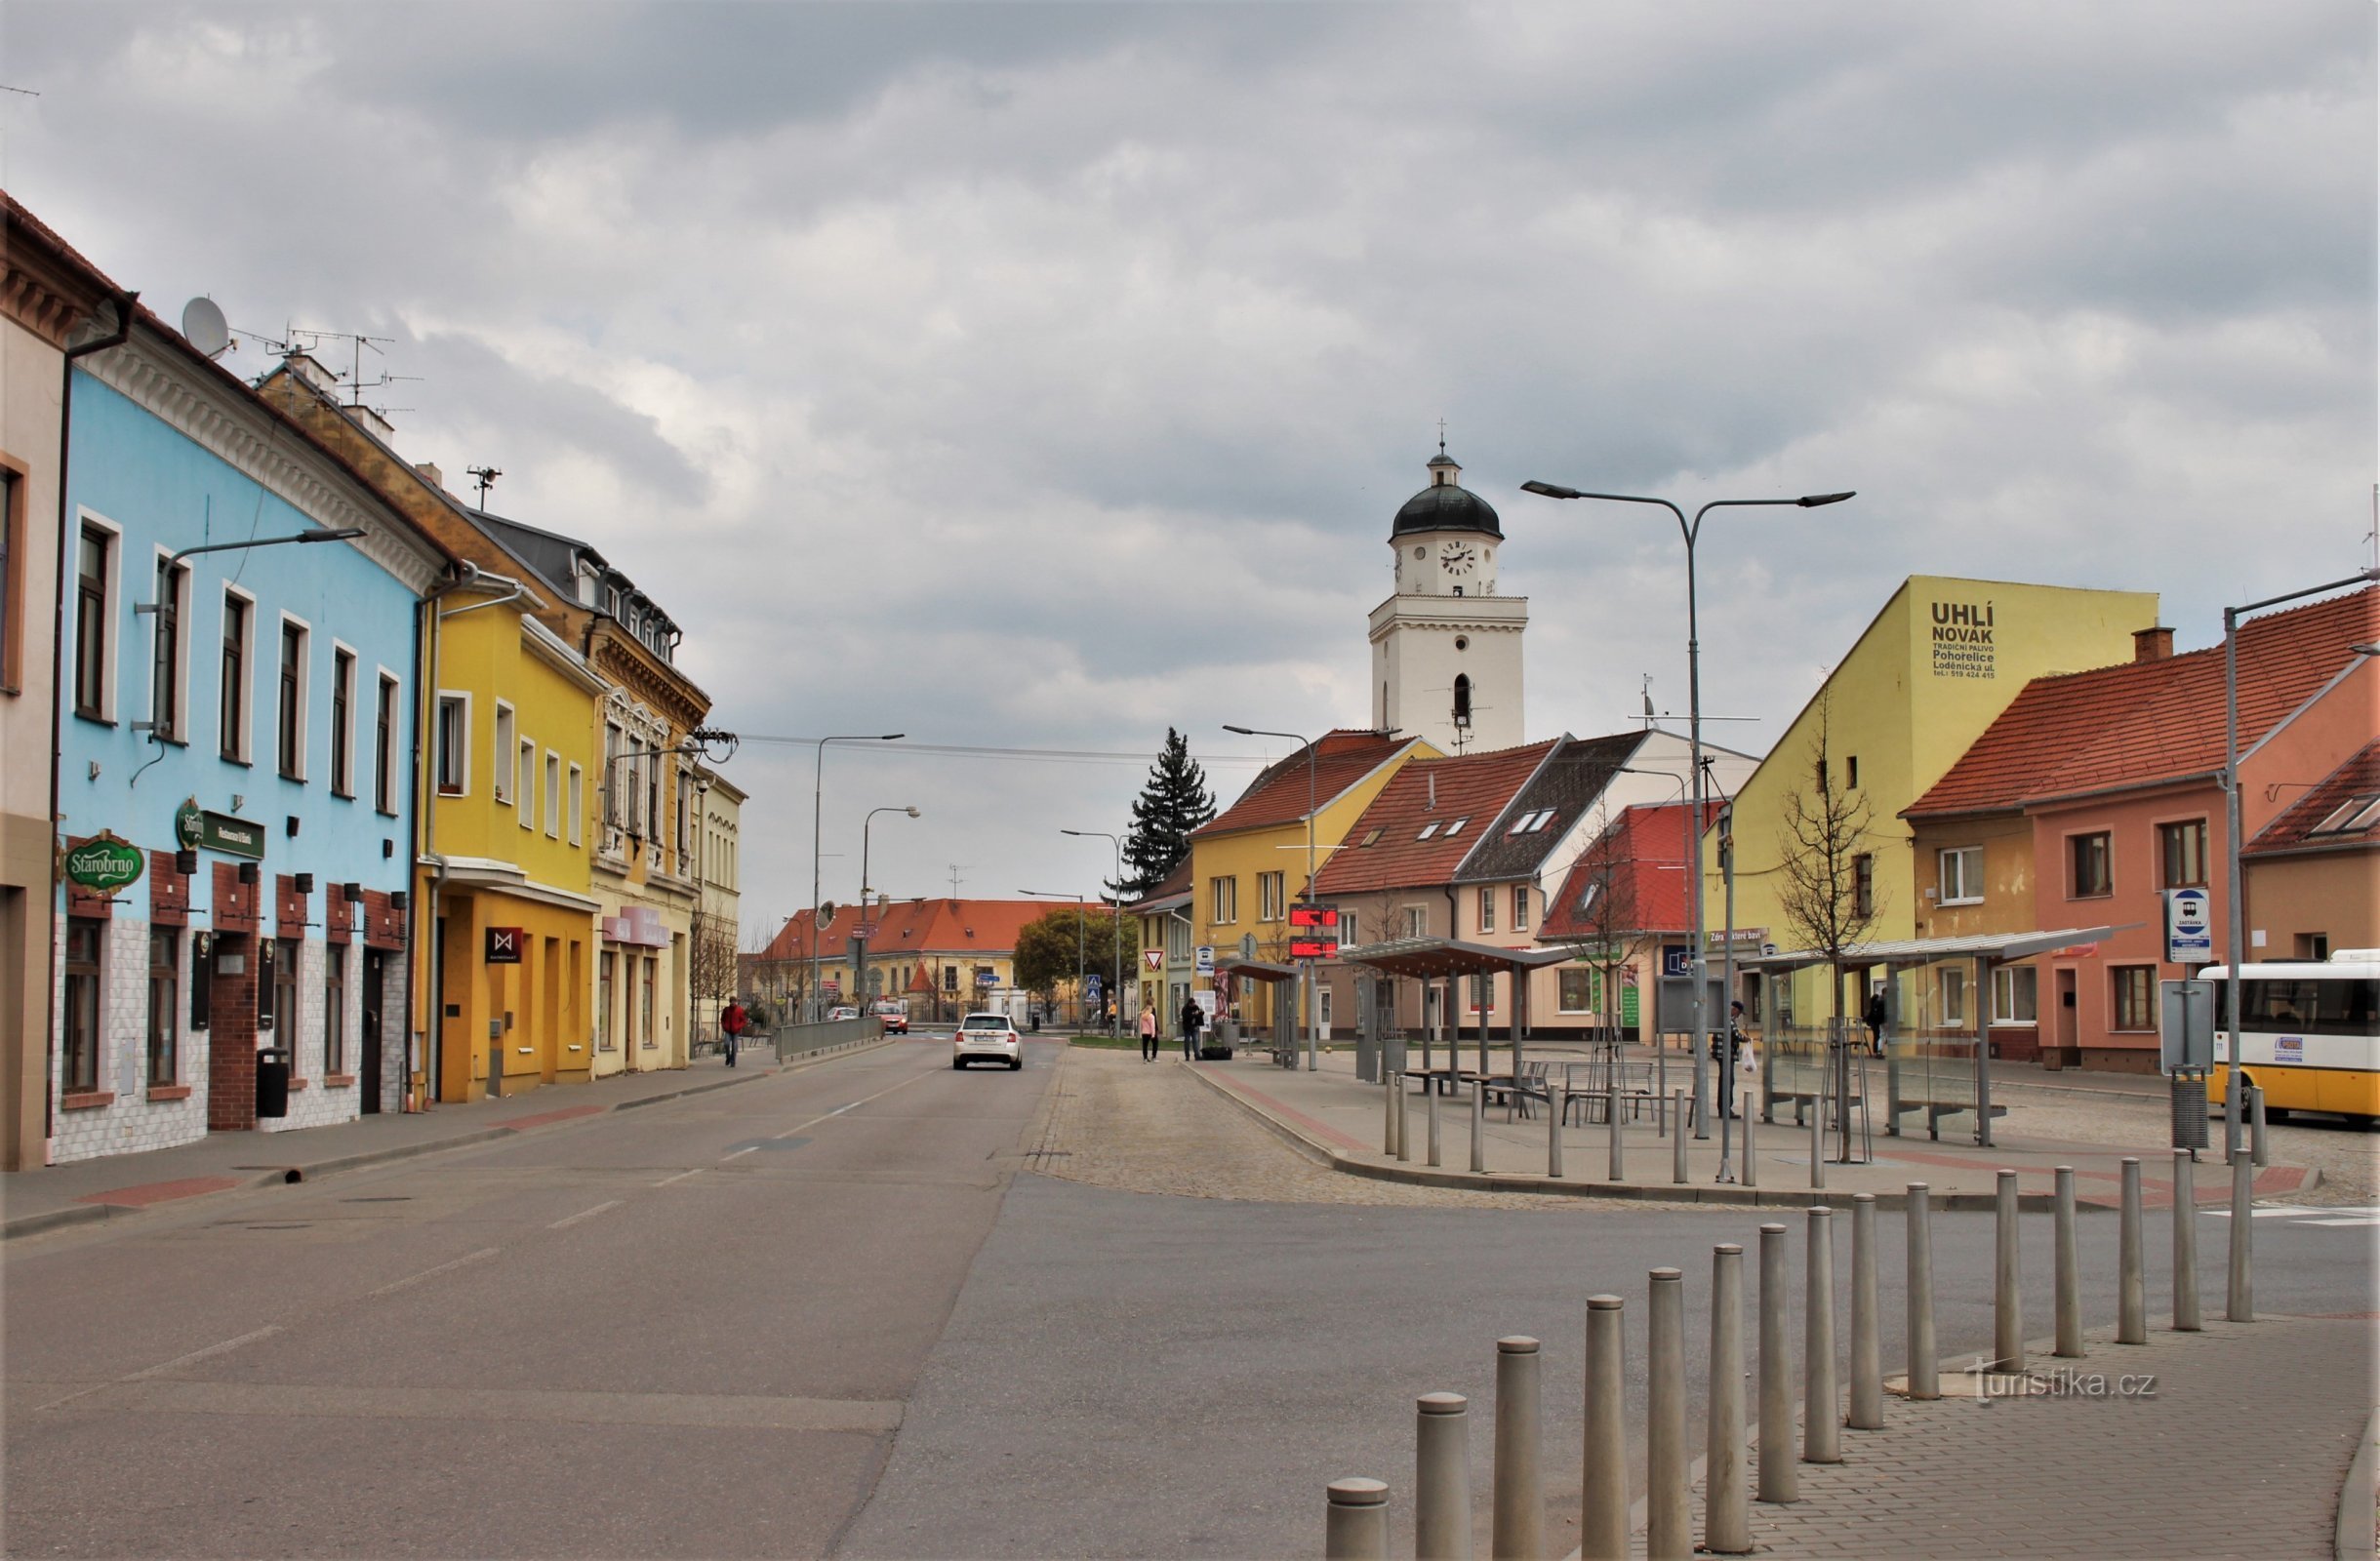 Pohořelické busstation in het verlengde deel van Lidicka straat